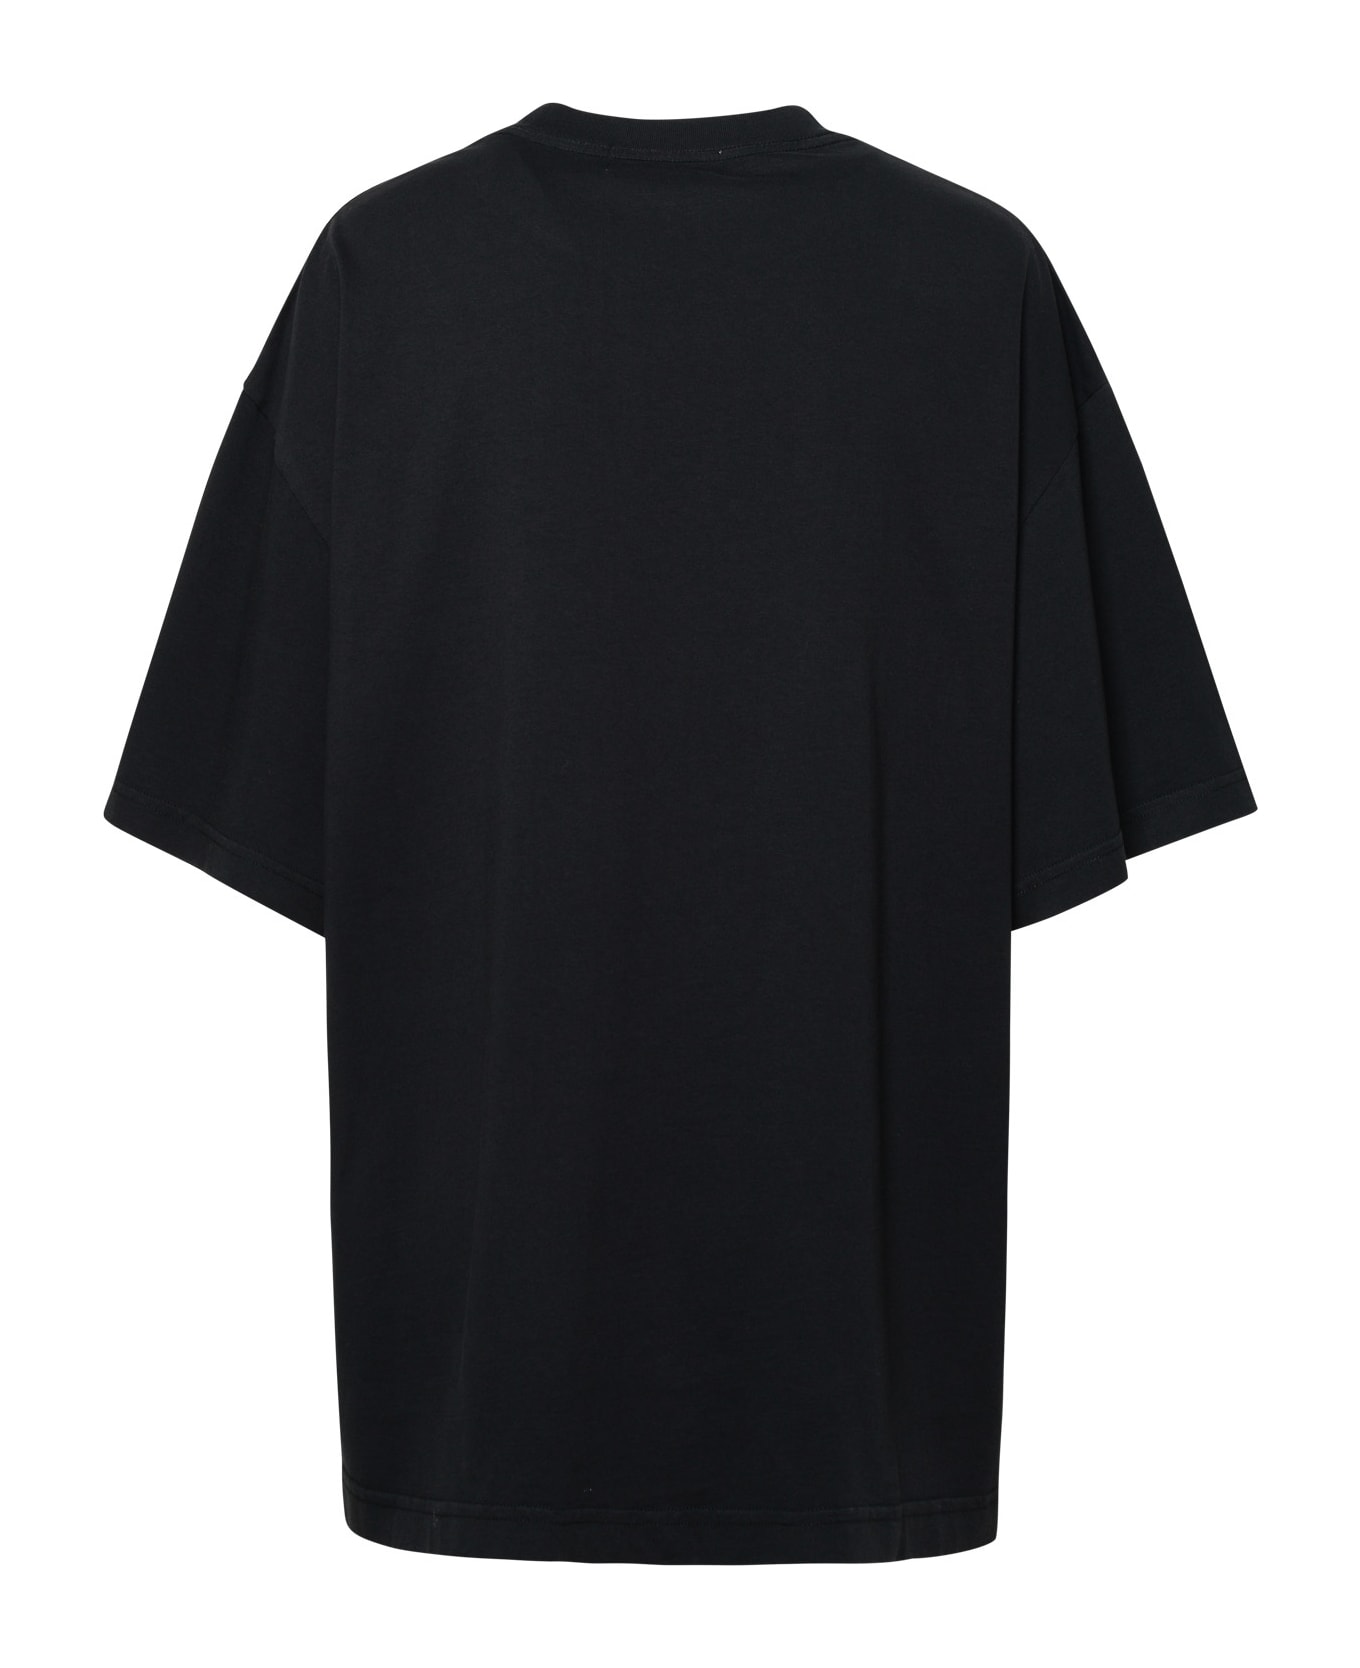 AMBUSH Cotton T-shirt - Black